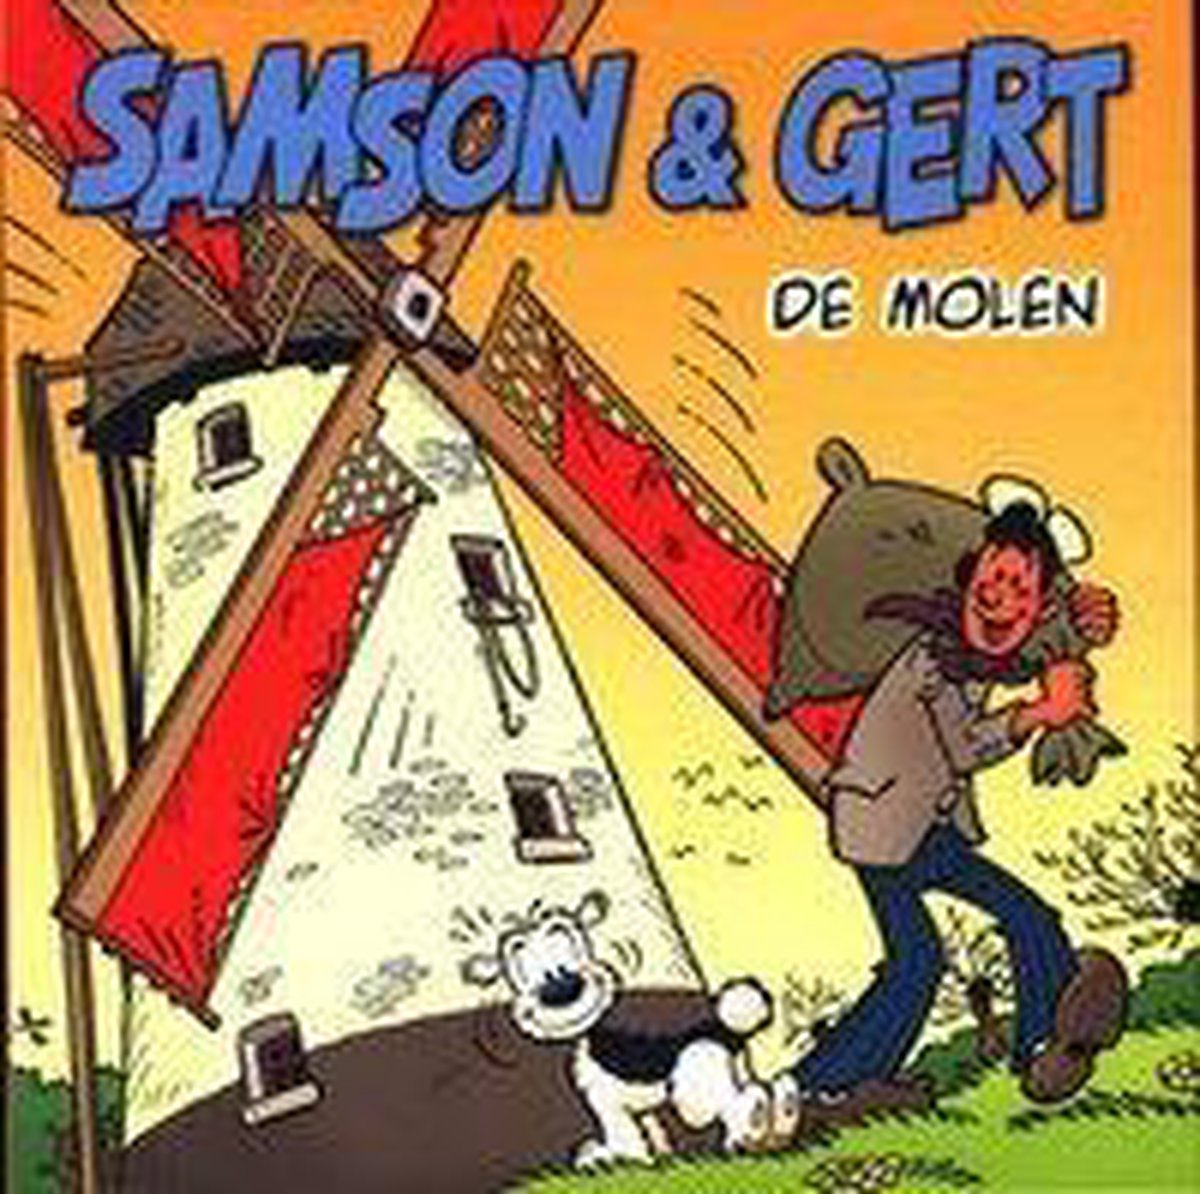 Samson & Gert: De Molen